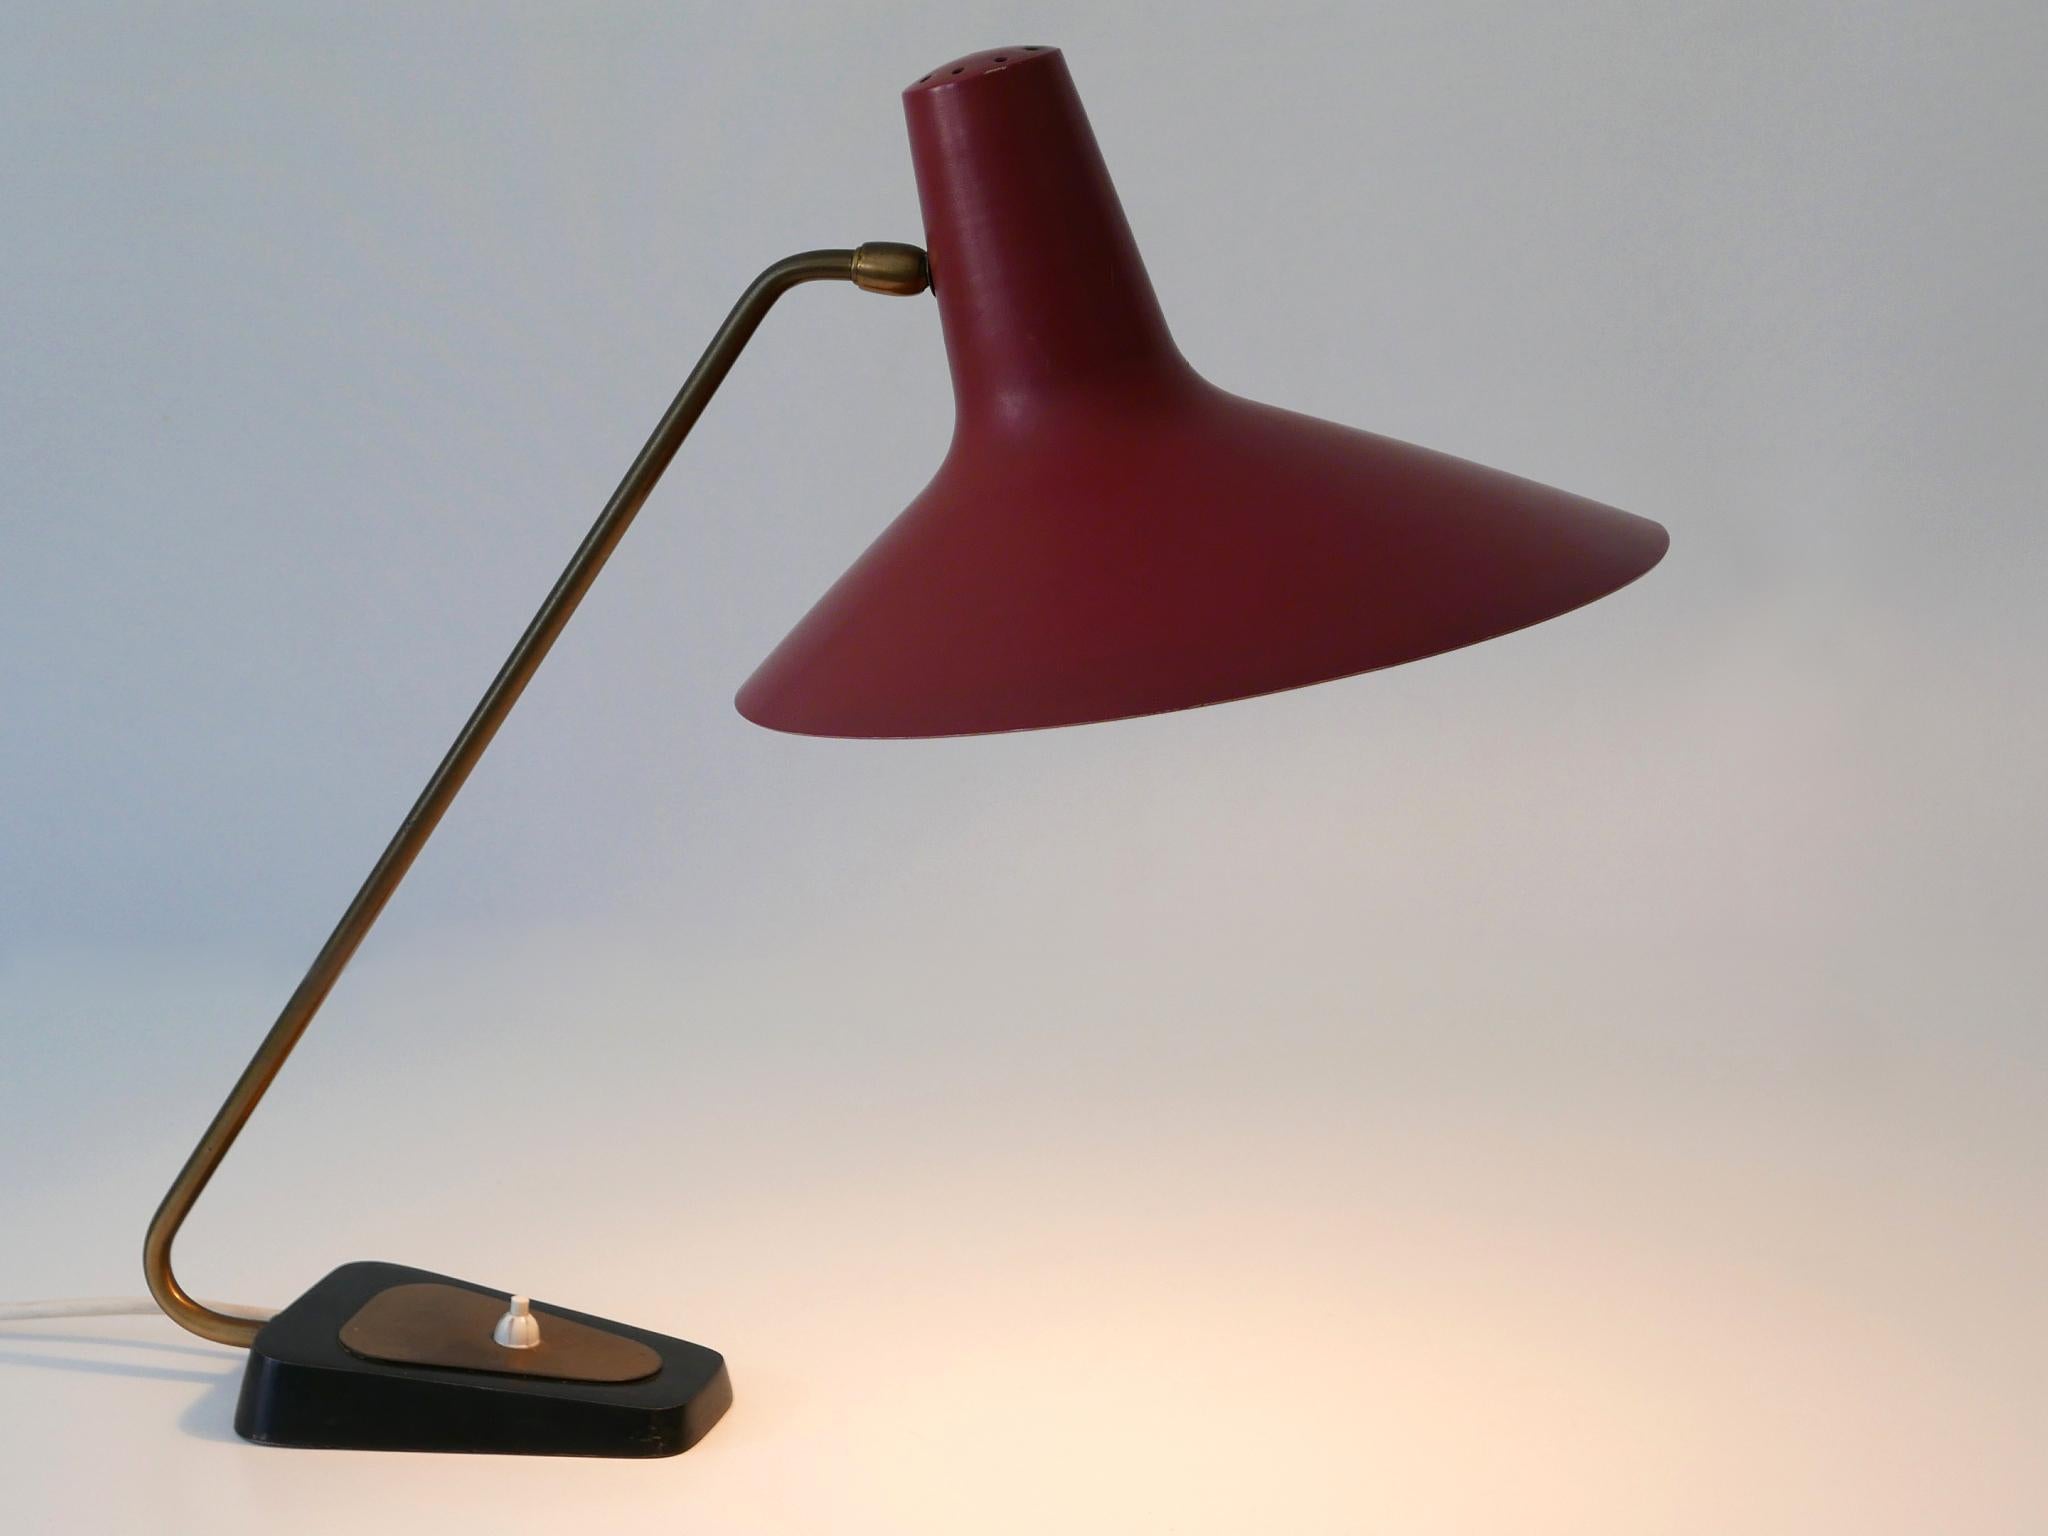 Äußerst seltene, elegante und verstellbare Mid-Century Modern Tischlampe oder Schreibtischlampe. Der große Lampenschirm ist in verschiedenen Positionen verstellbar. Hergestellt von Gebrüder Cosack, Neheim-Hüsten, Deutschland, 1950er